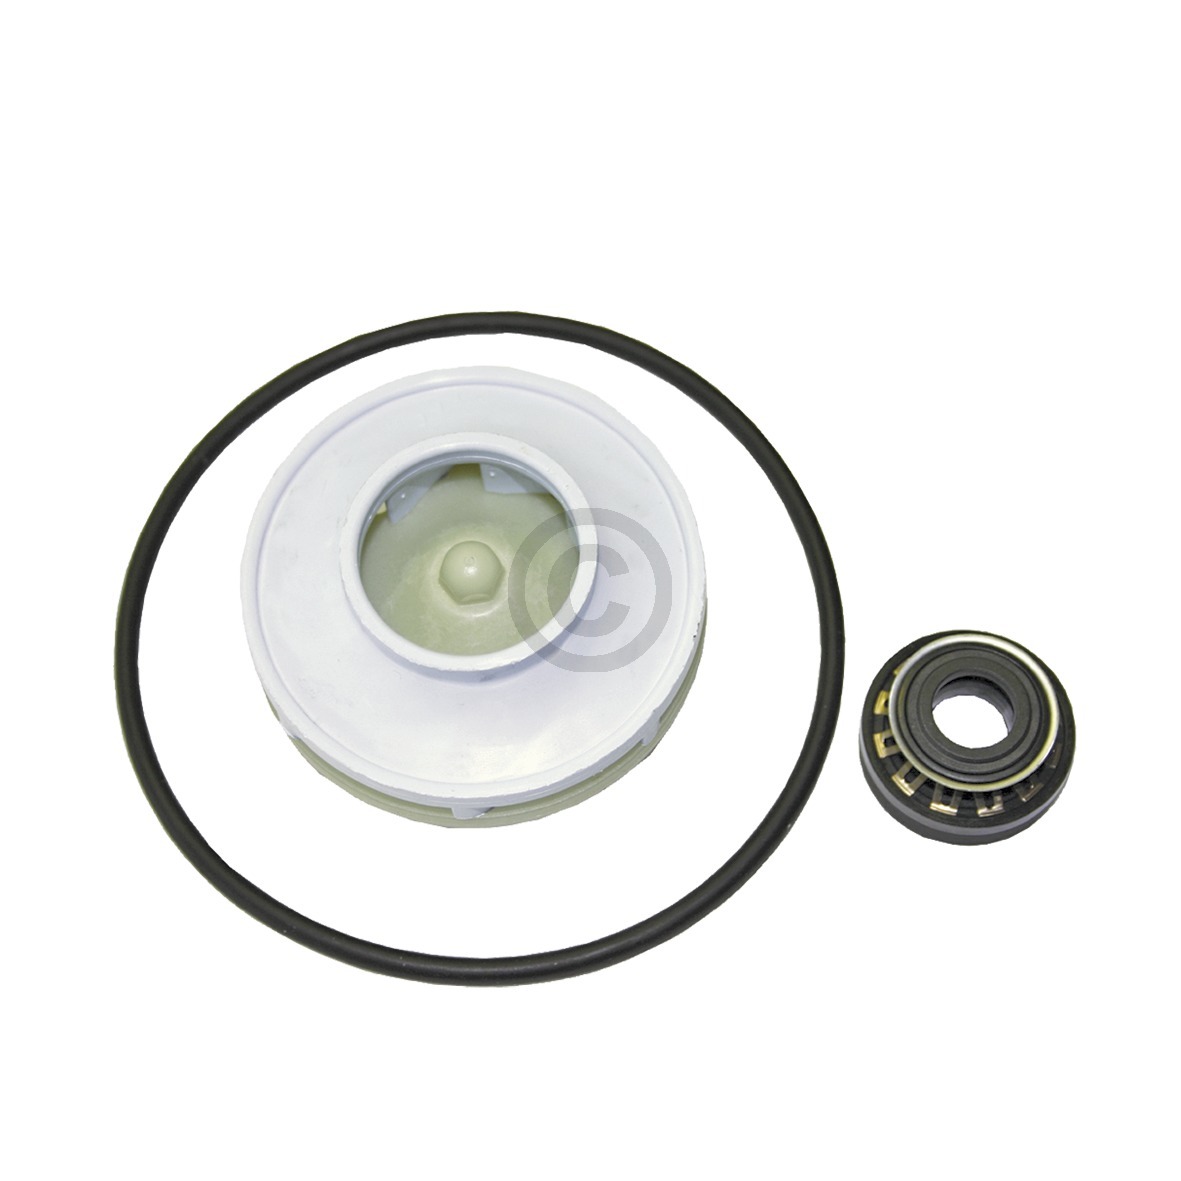 Pumpen-Dichtsatz für Umwälzpumpe Bosch 00174730 für Geschirrspüler